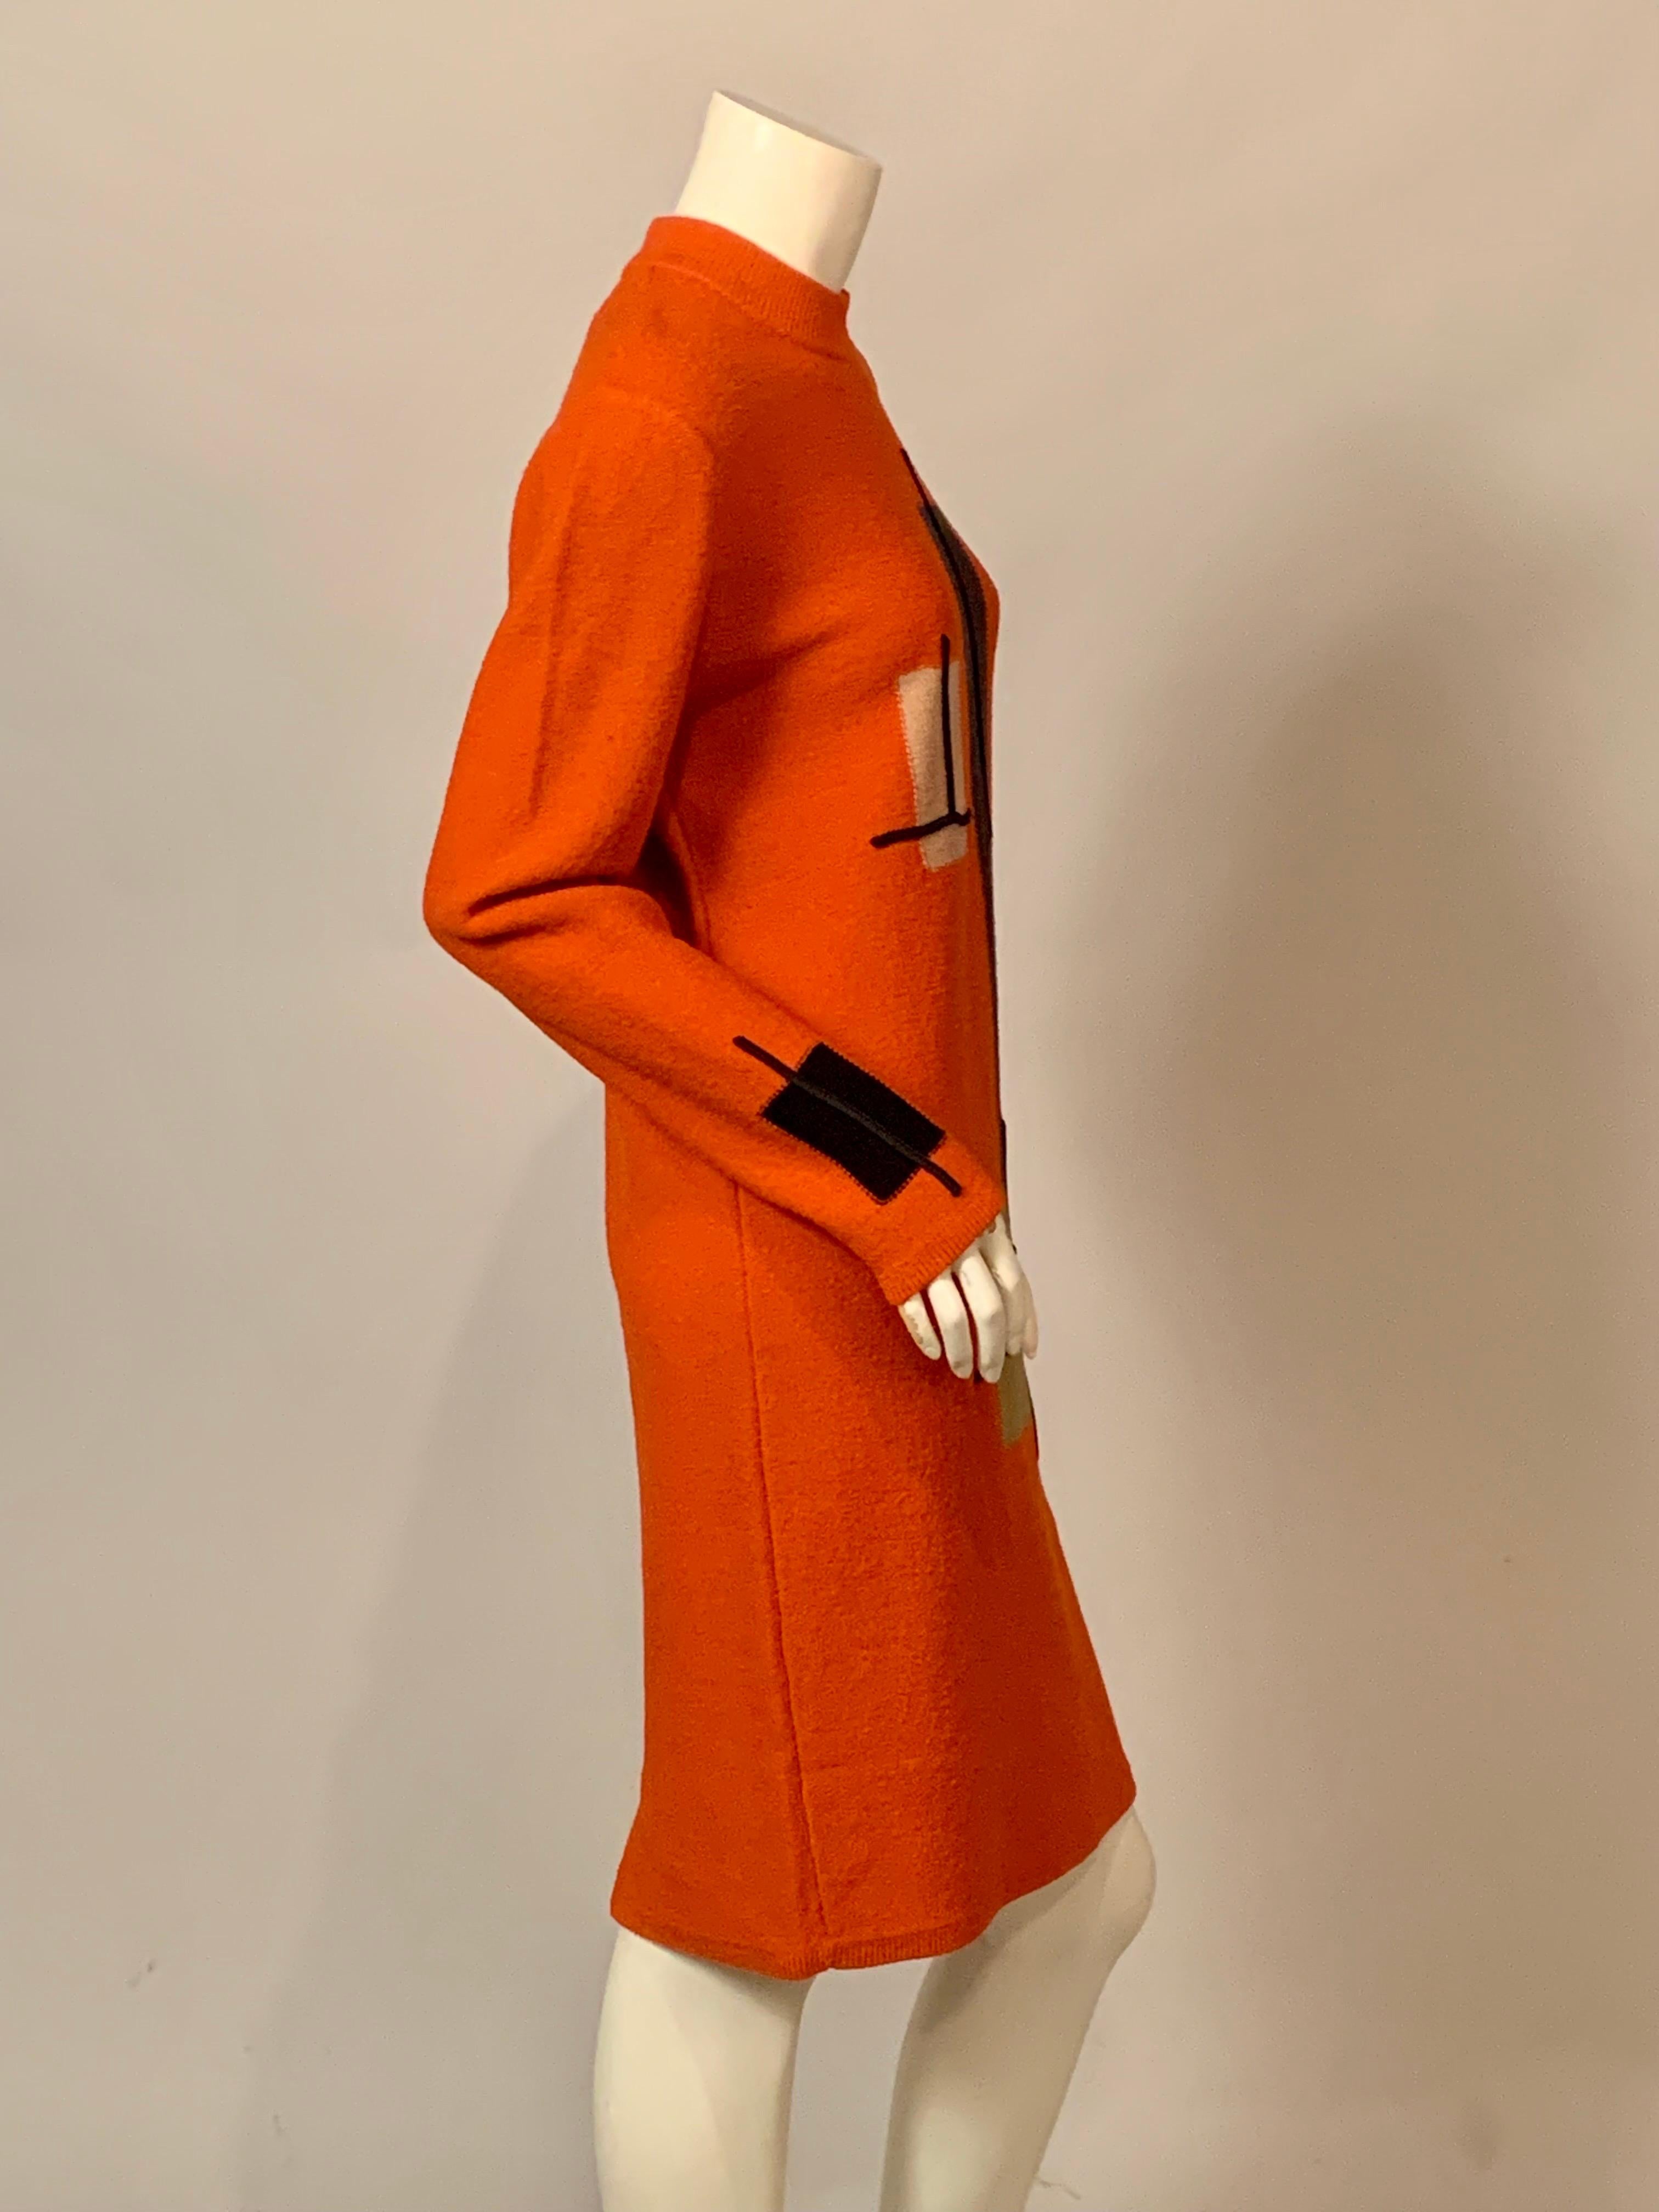 Steve Fabrikant Modernist Inspired Orange Knit Dress 1